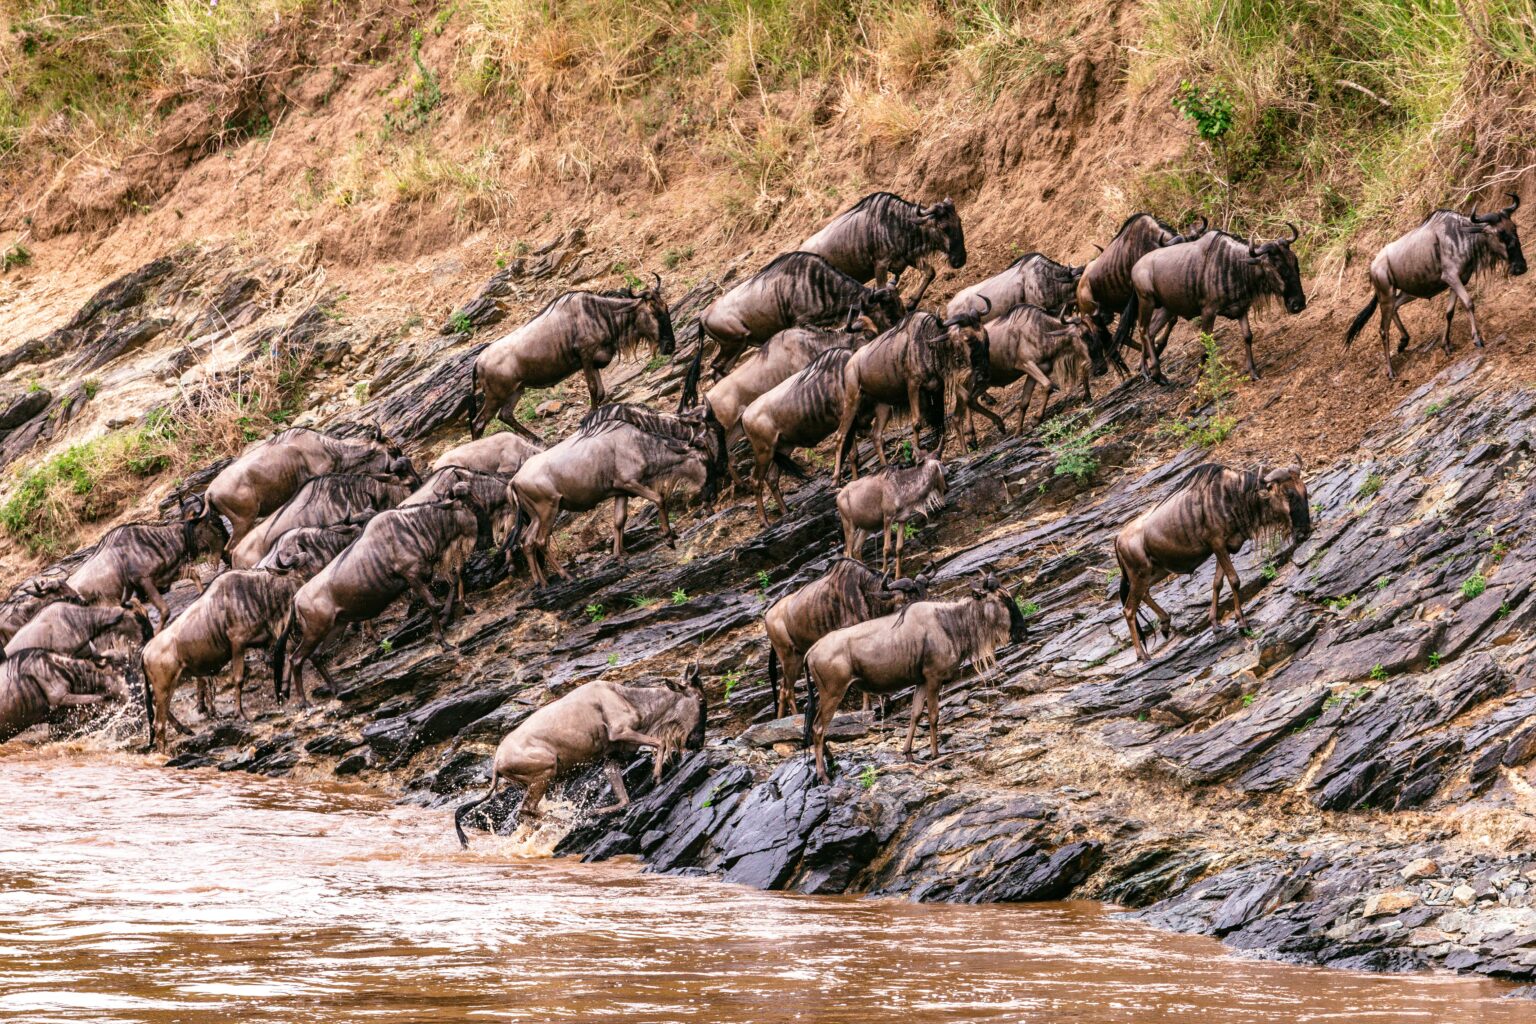 1. Maasai Mara